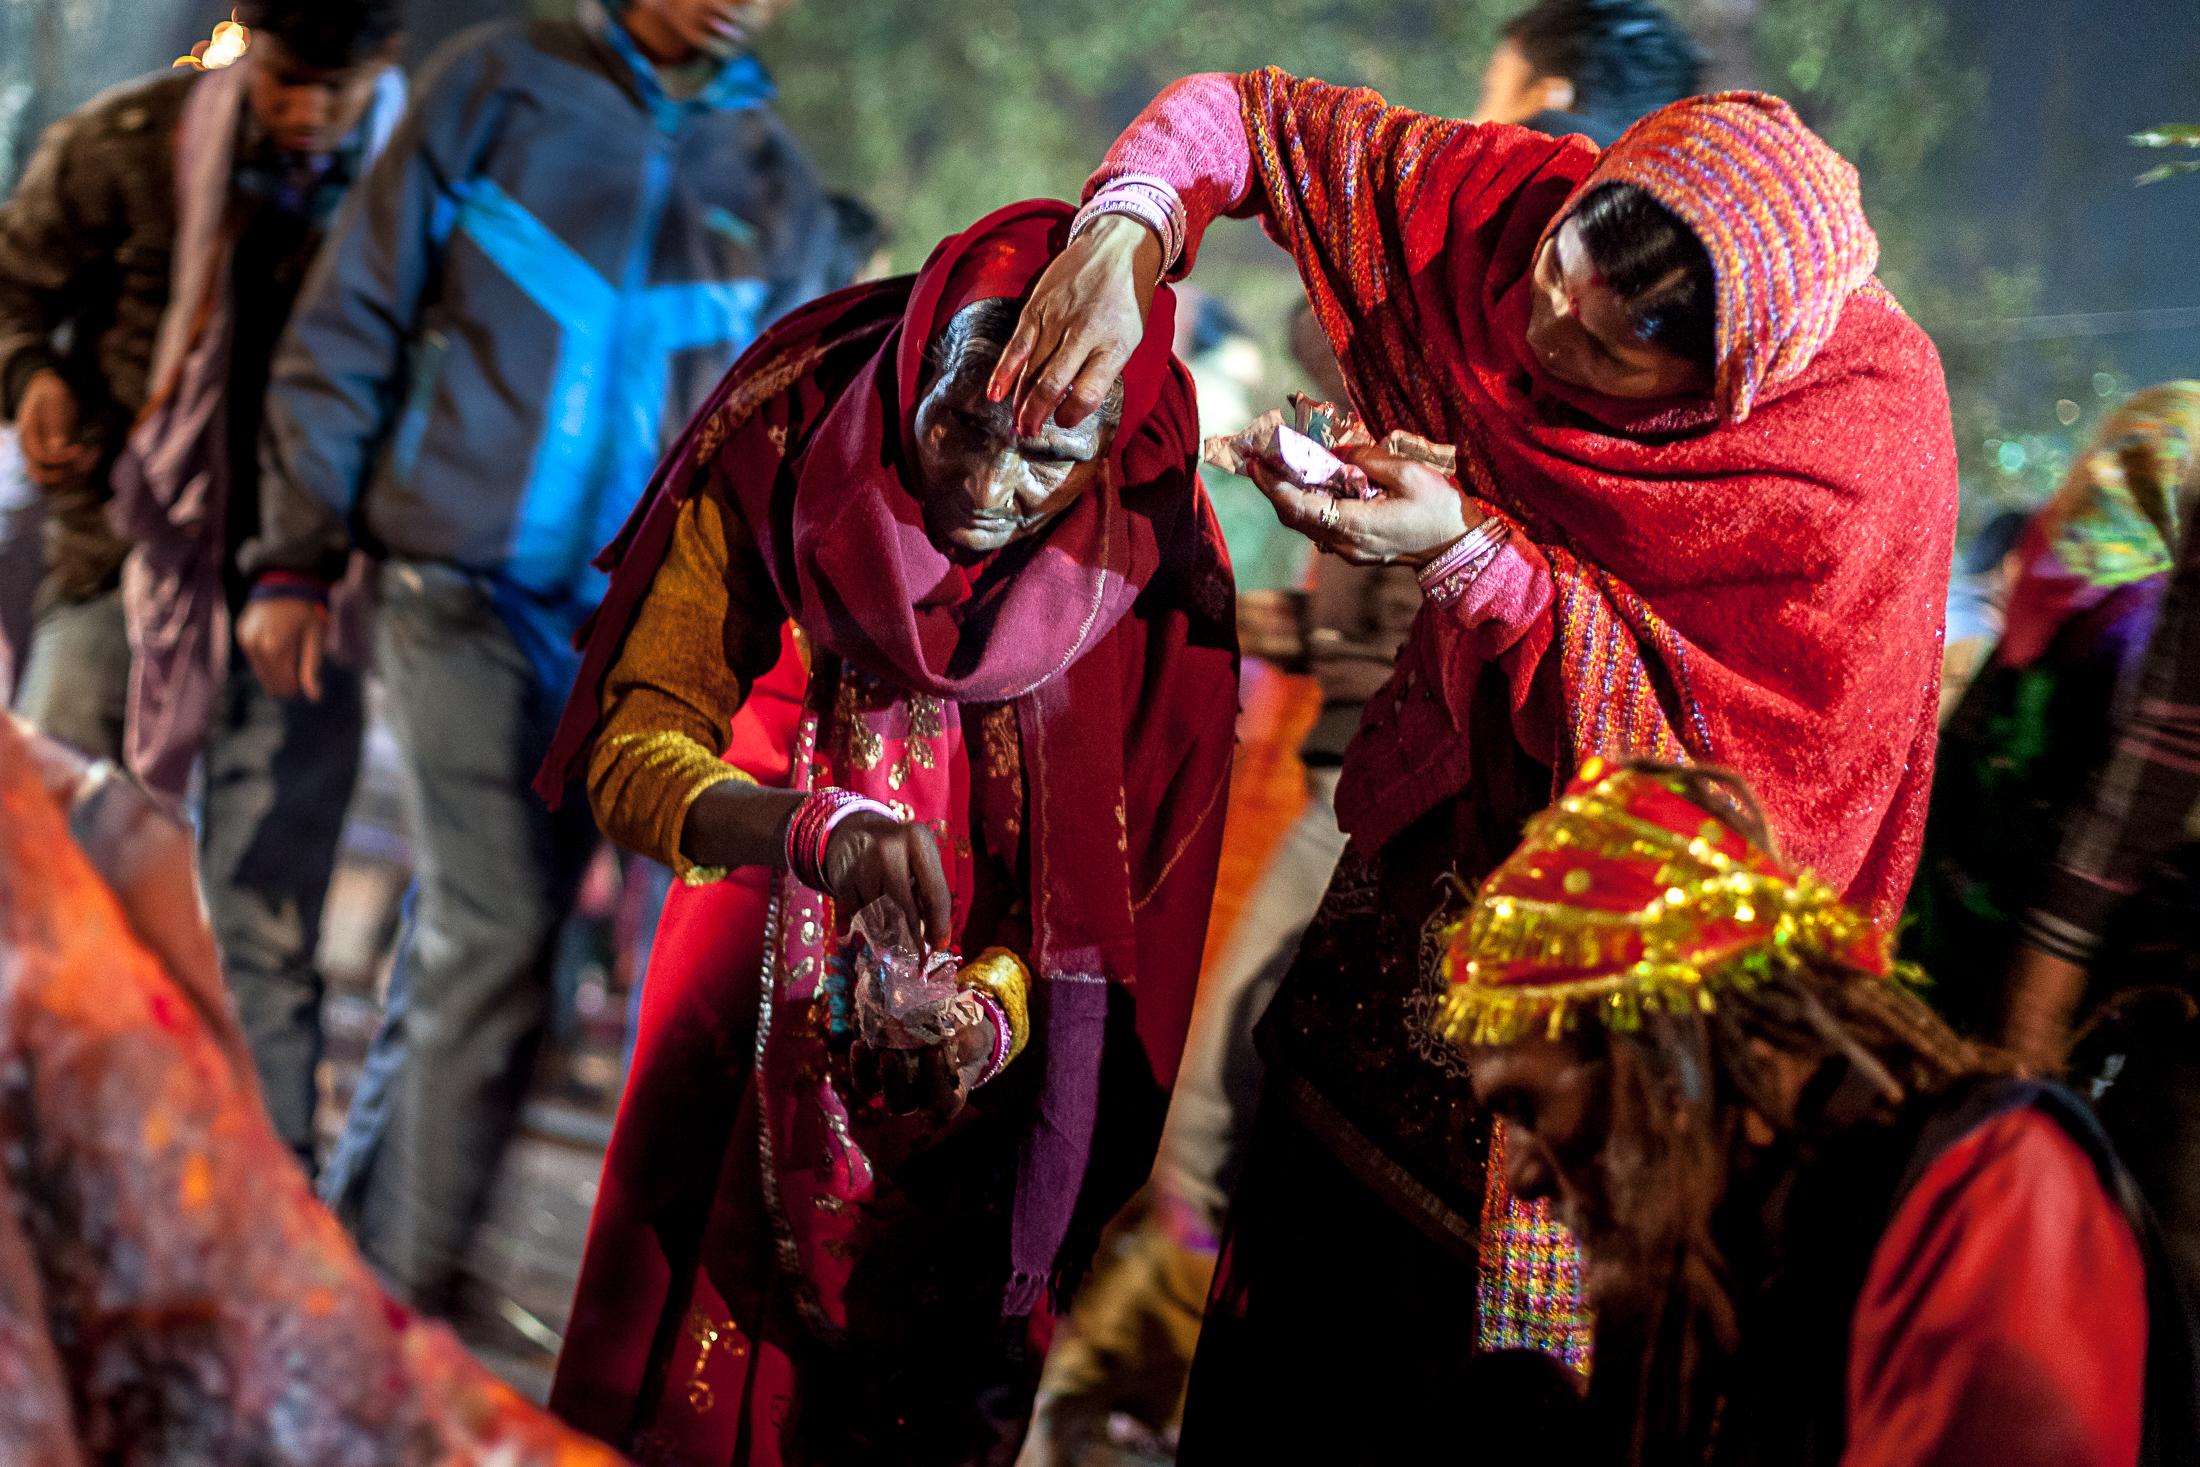 A Bloodbath in the Name of Gadhimai